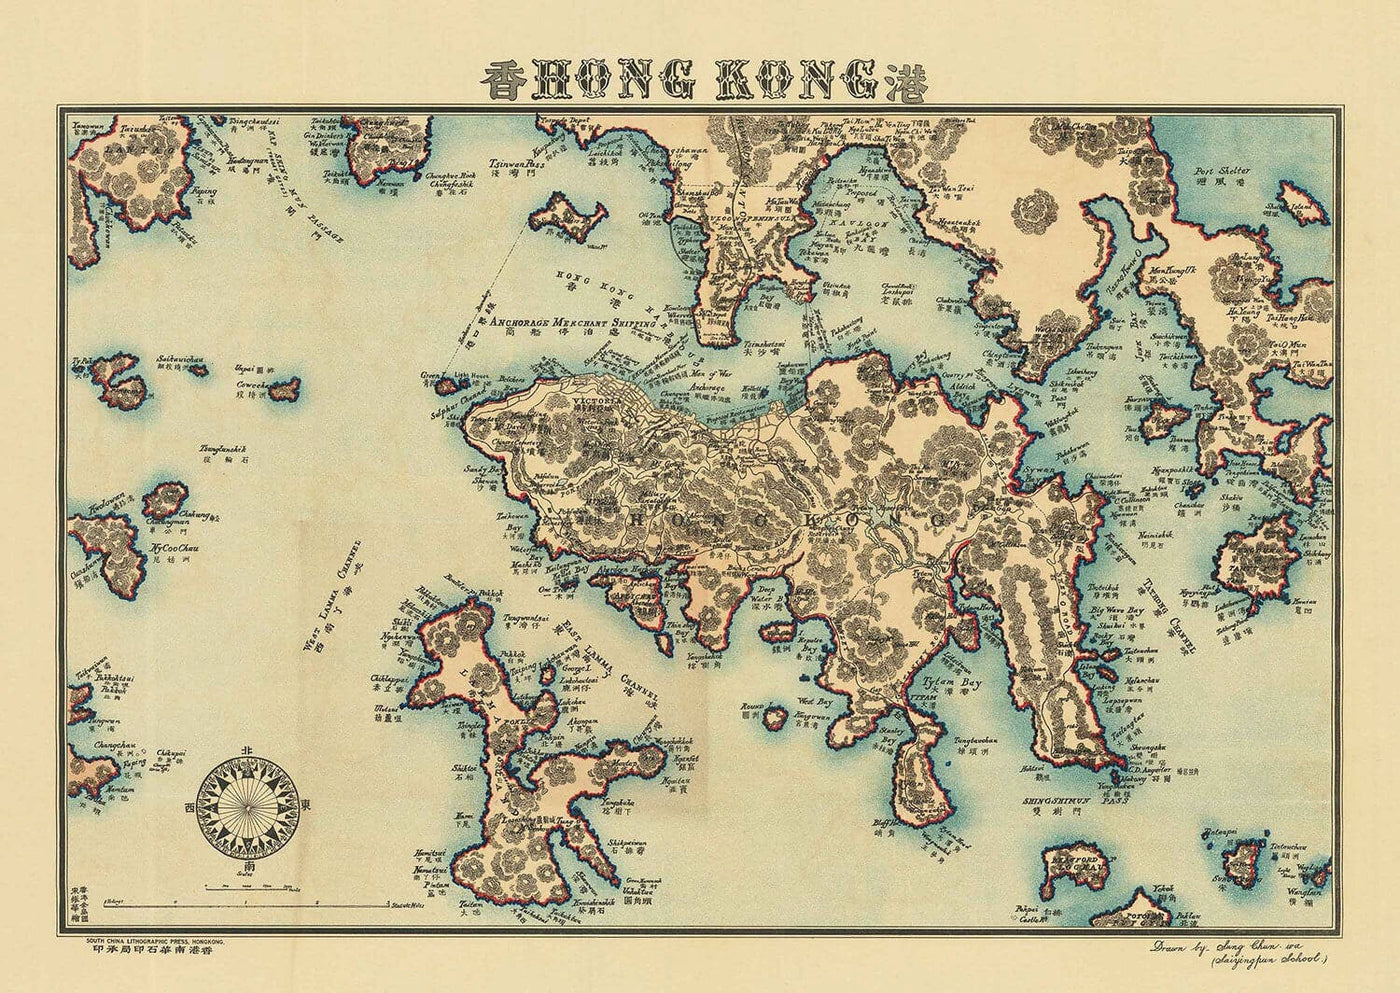 Antiguo mapa de Hong Kong, 1924 por Sung Chun Wa - Central, Kowloon, Causeway, Victoria Harbour, Islas, Montañas, Lamma